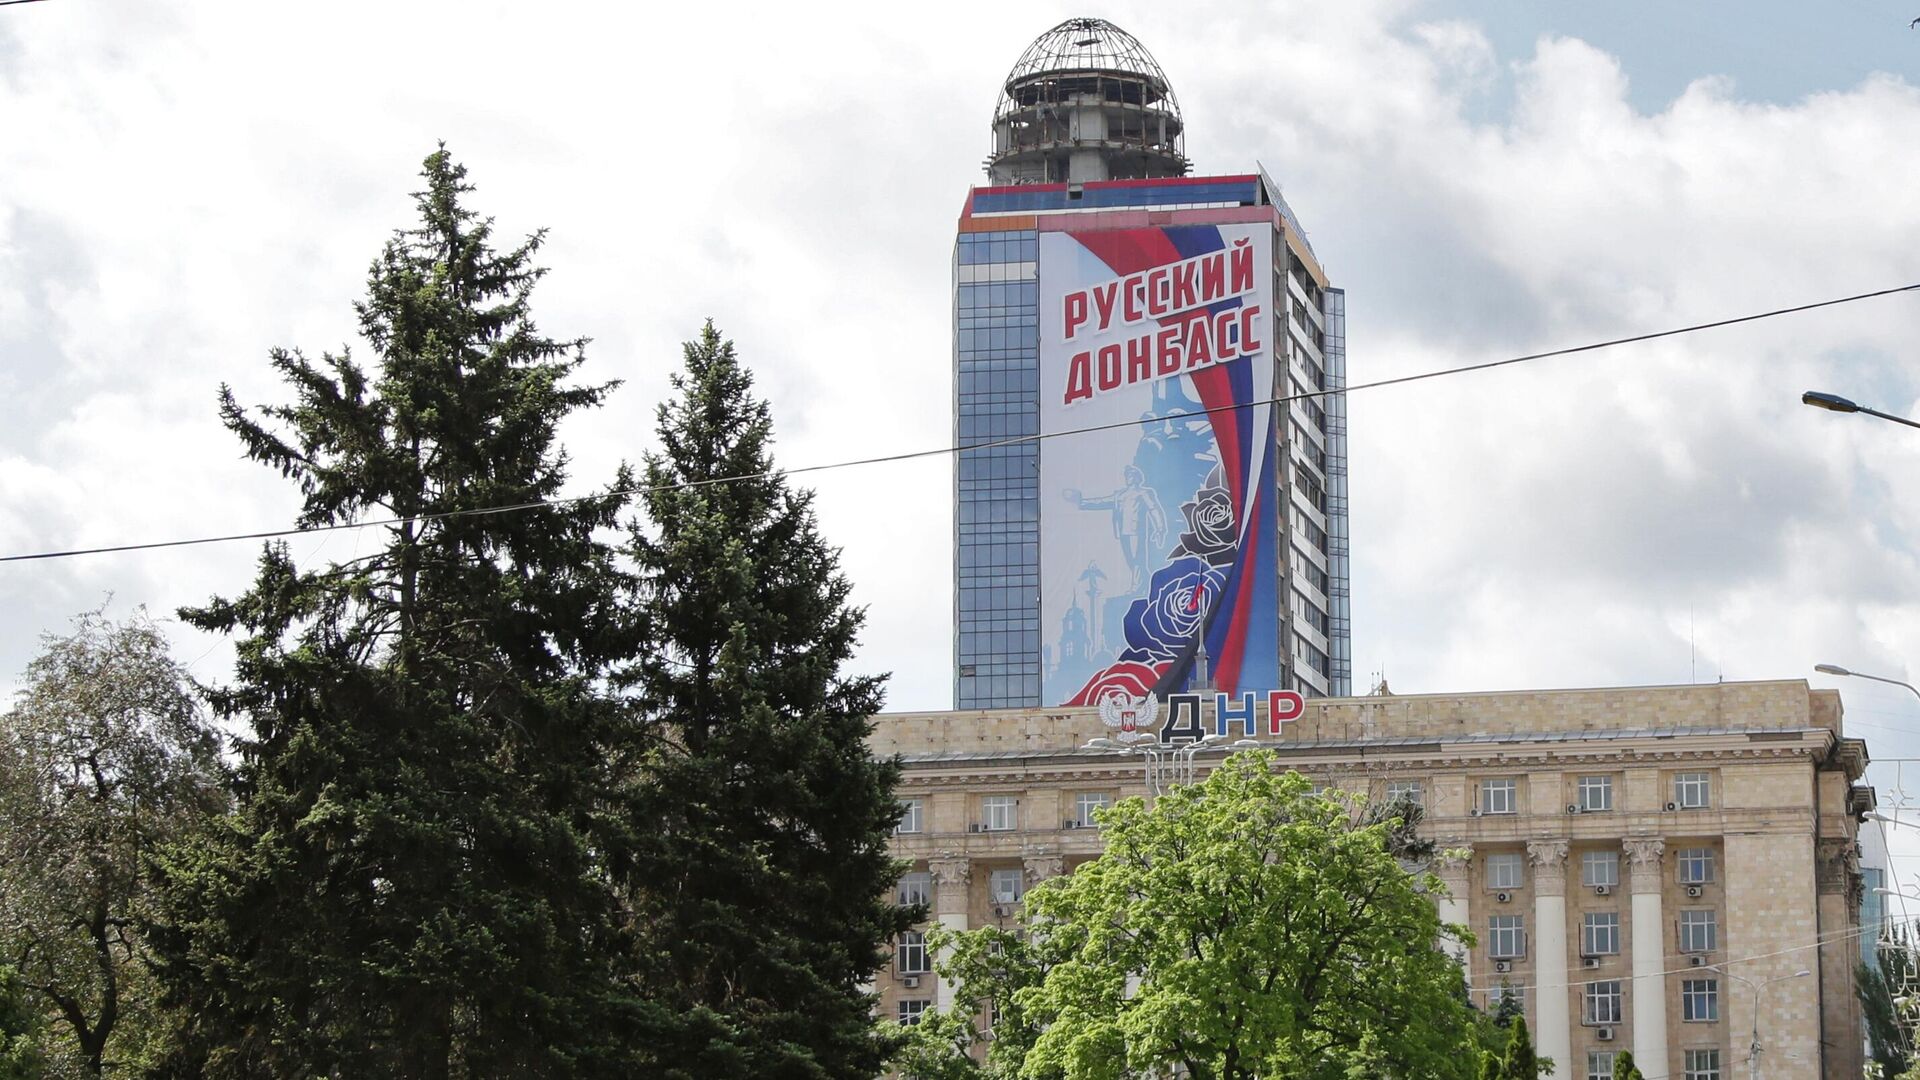 Баннер Русский Донбасс на здании в Донецке, архивное фото - Sputnik Lietuva, 1920, 23.08.2021